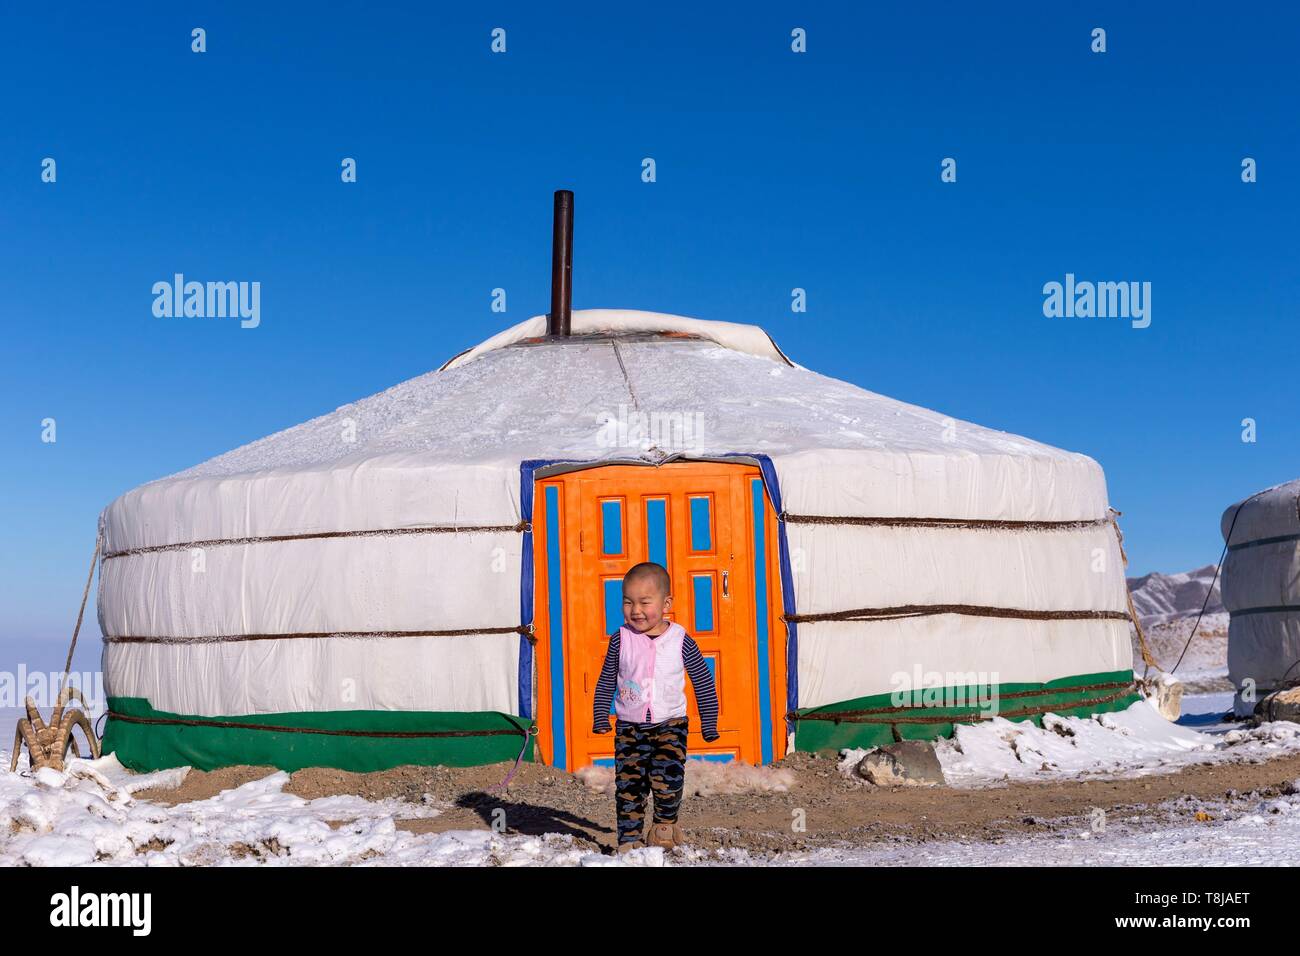 La Mongolie, à l'ouest de la Mongolie, Altaï, Yourte dans la neige avec un enfant Banque D'Images